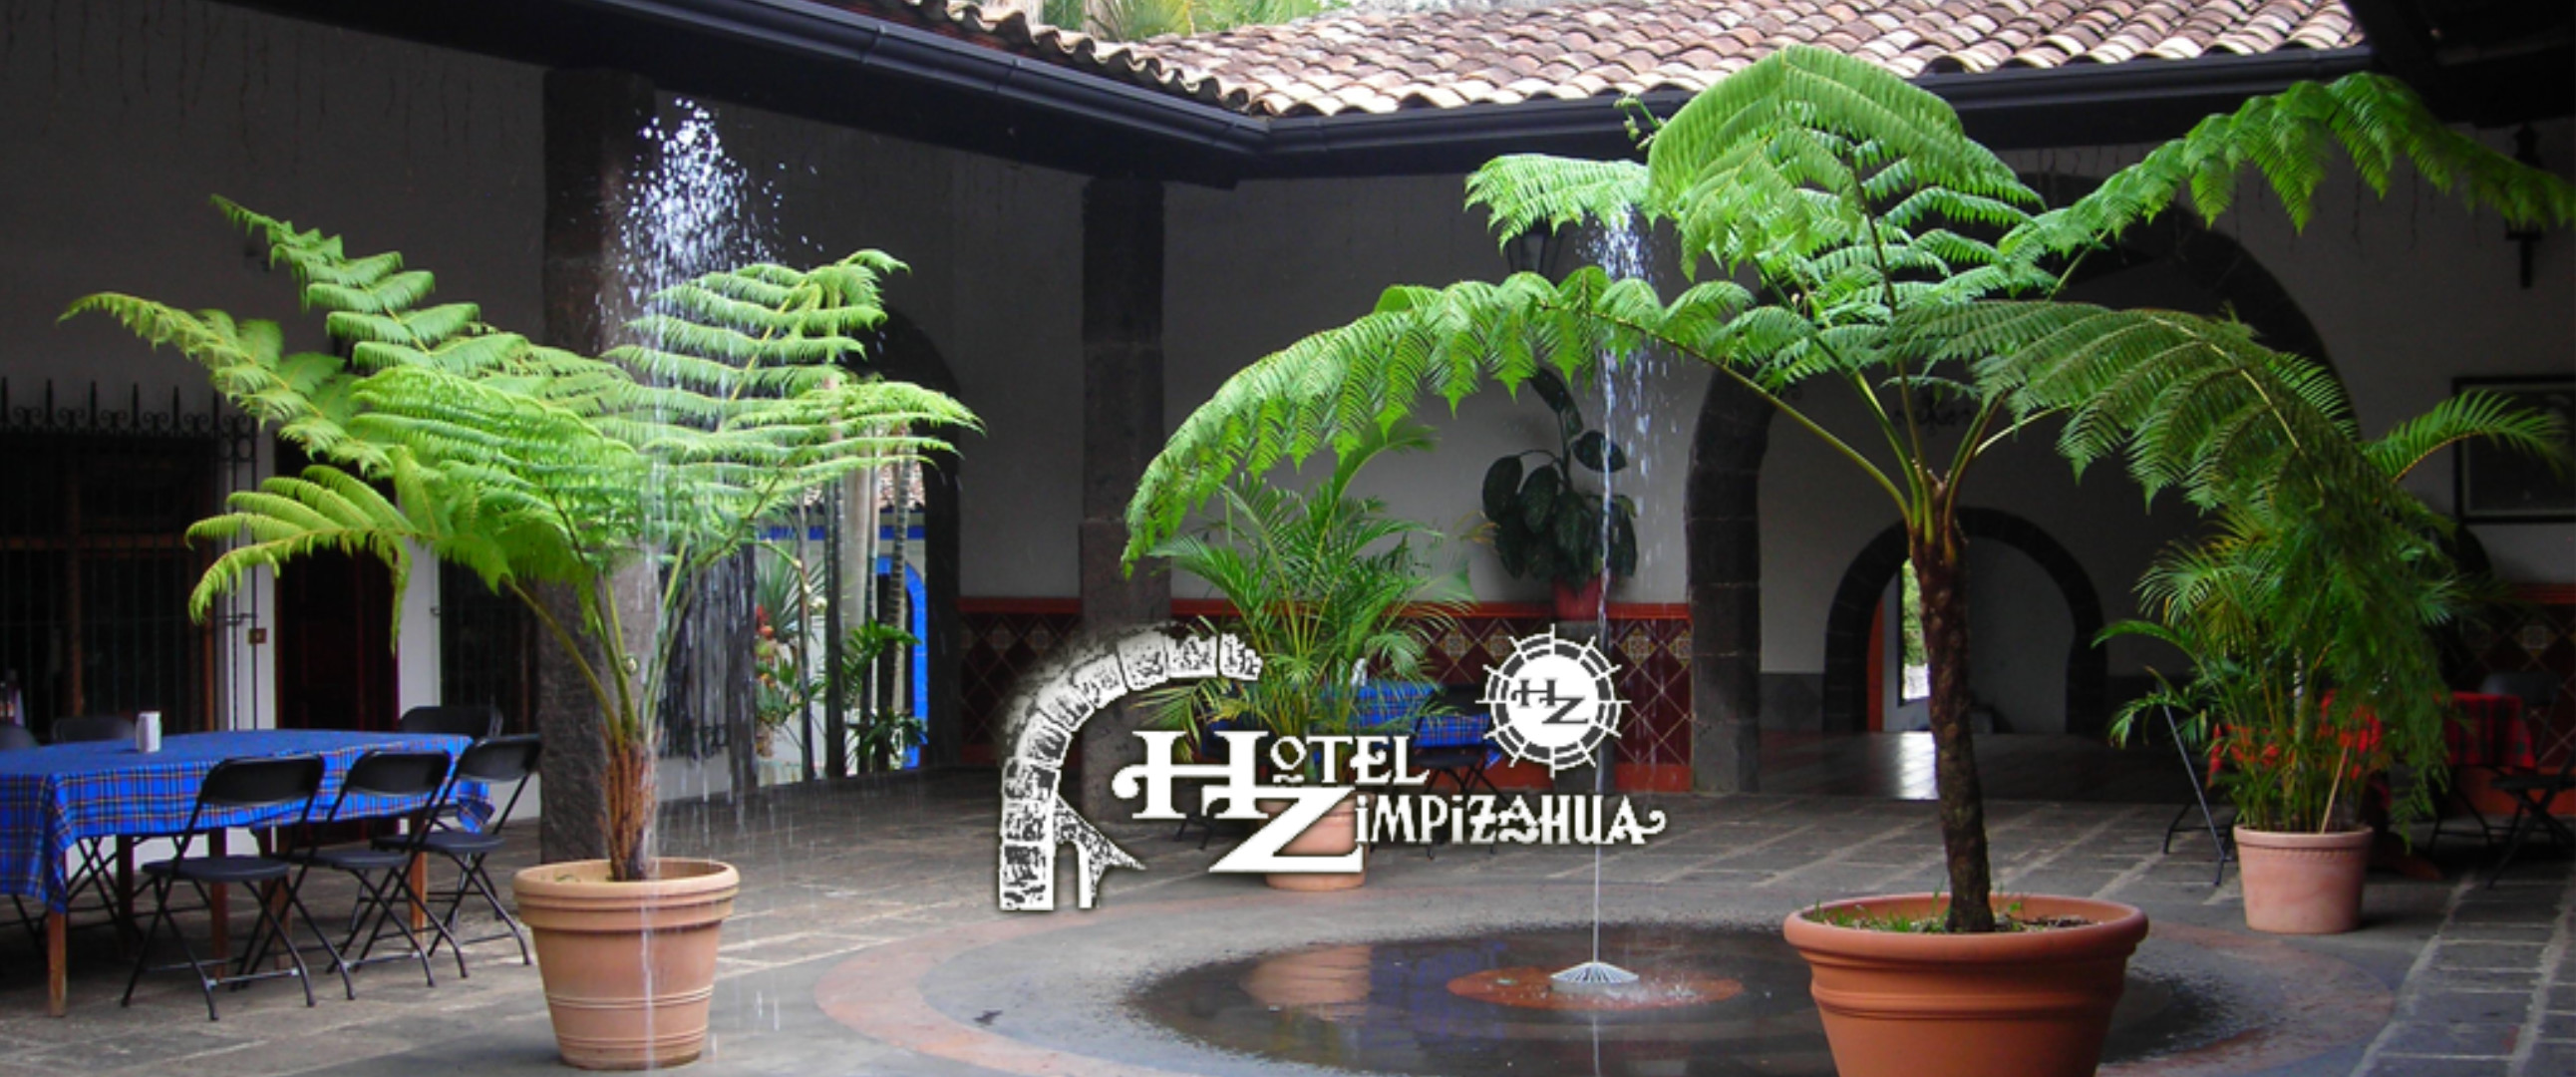 Fotografía de los pasillos de la hacienda zimpizahua